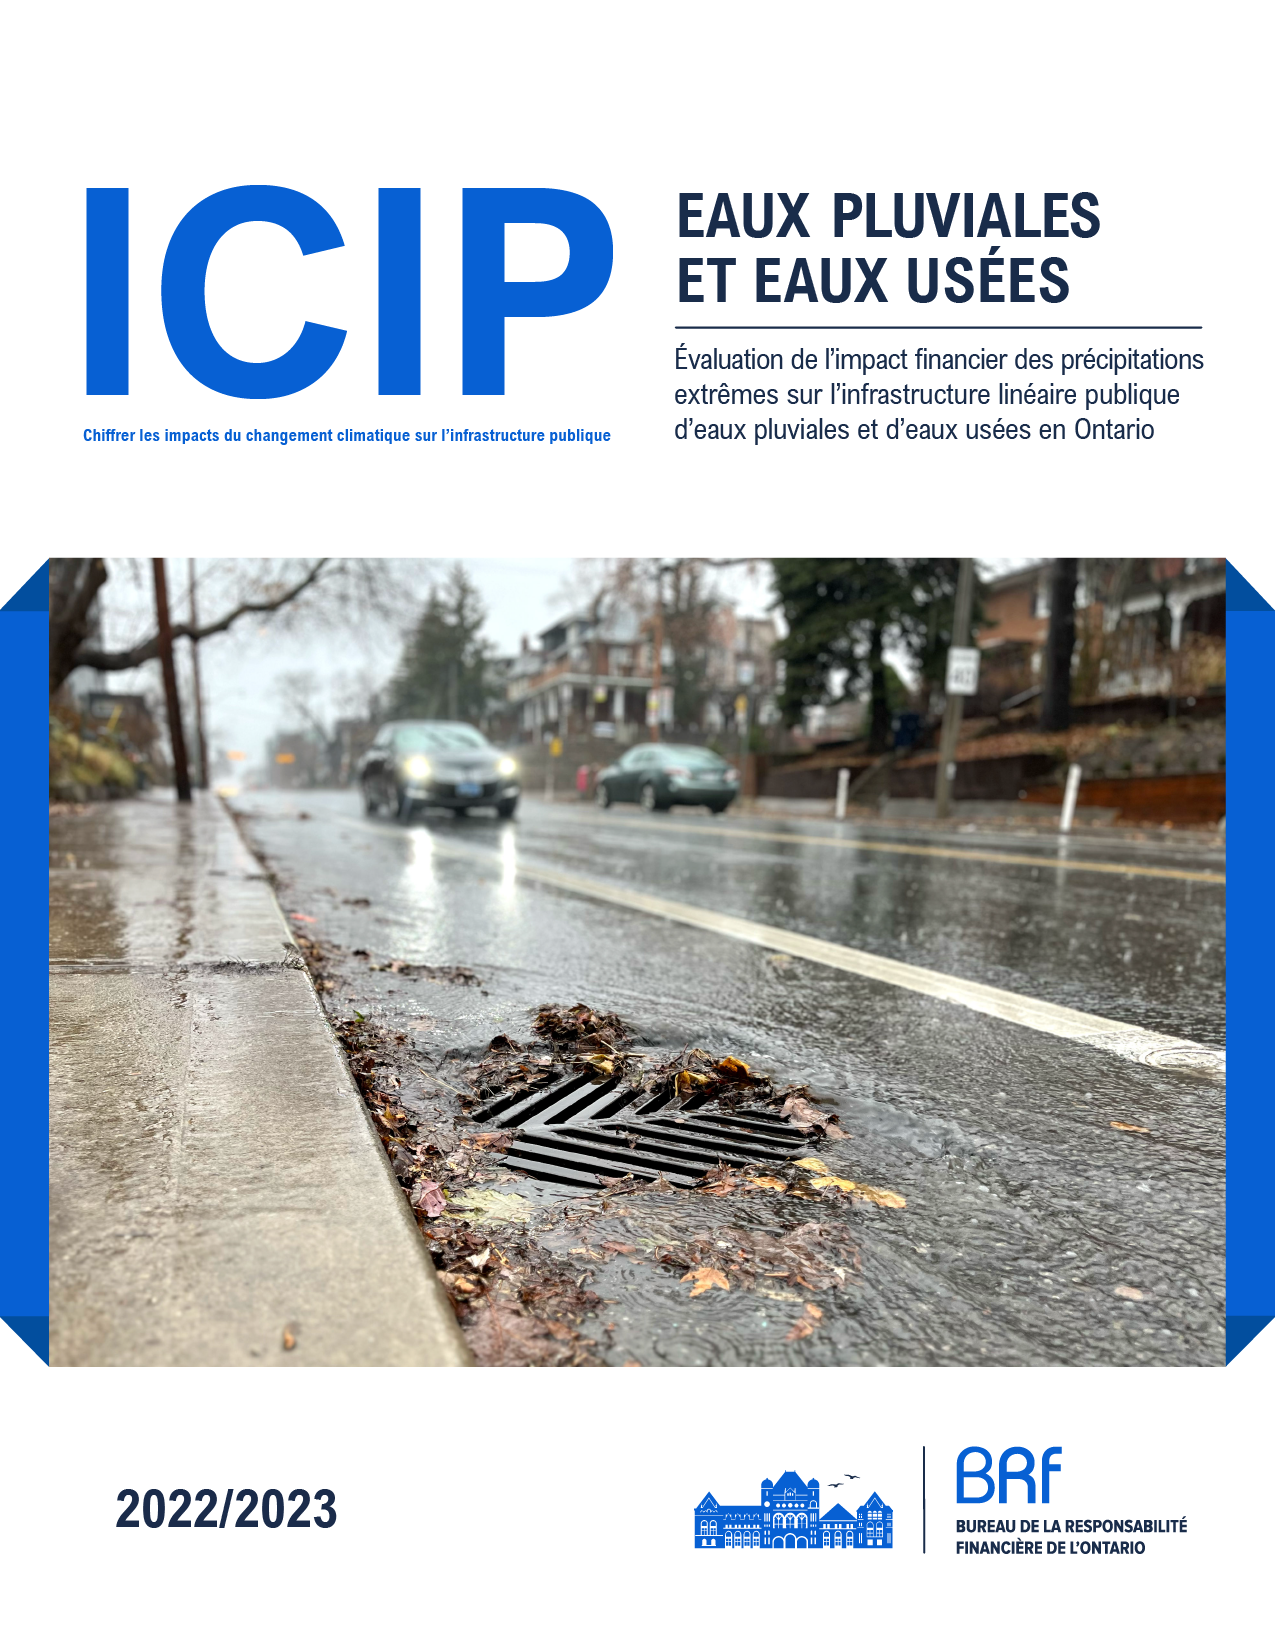 ICIP : Eaux pluviales et eaux usées - Évaluation de l'impact financier des précipitations extrêmes sur l'infrastructure linéaire publique d'eaux pluviales et d'eaux usées en Ontario